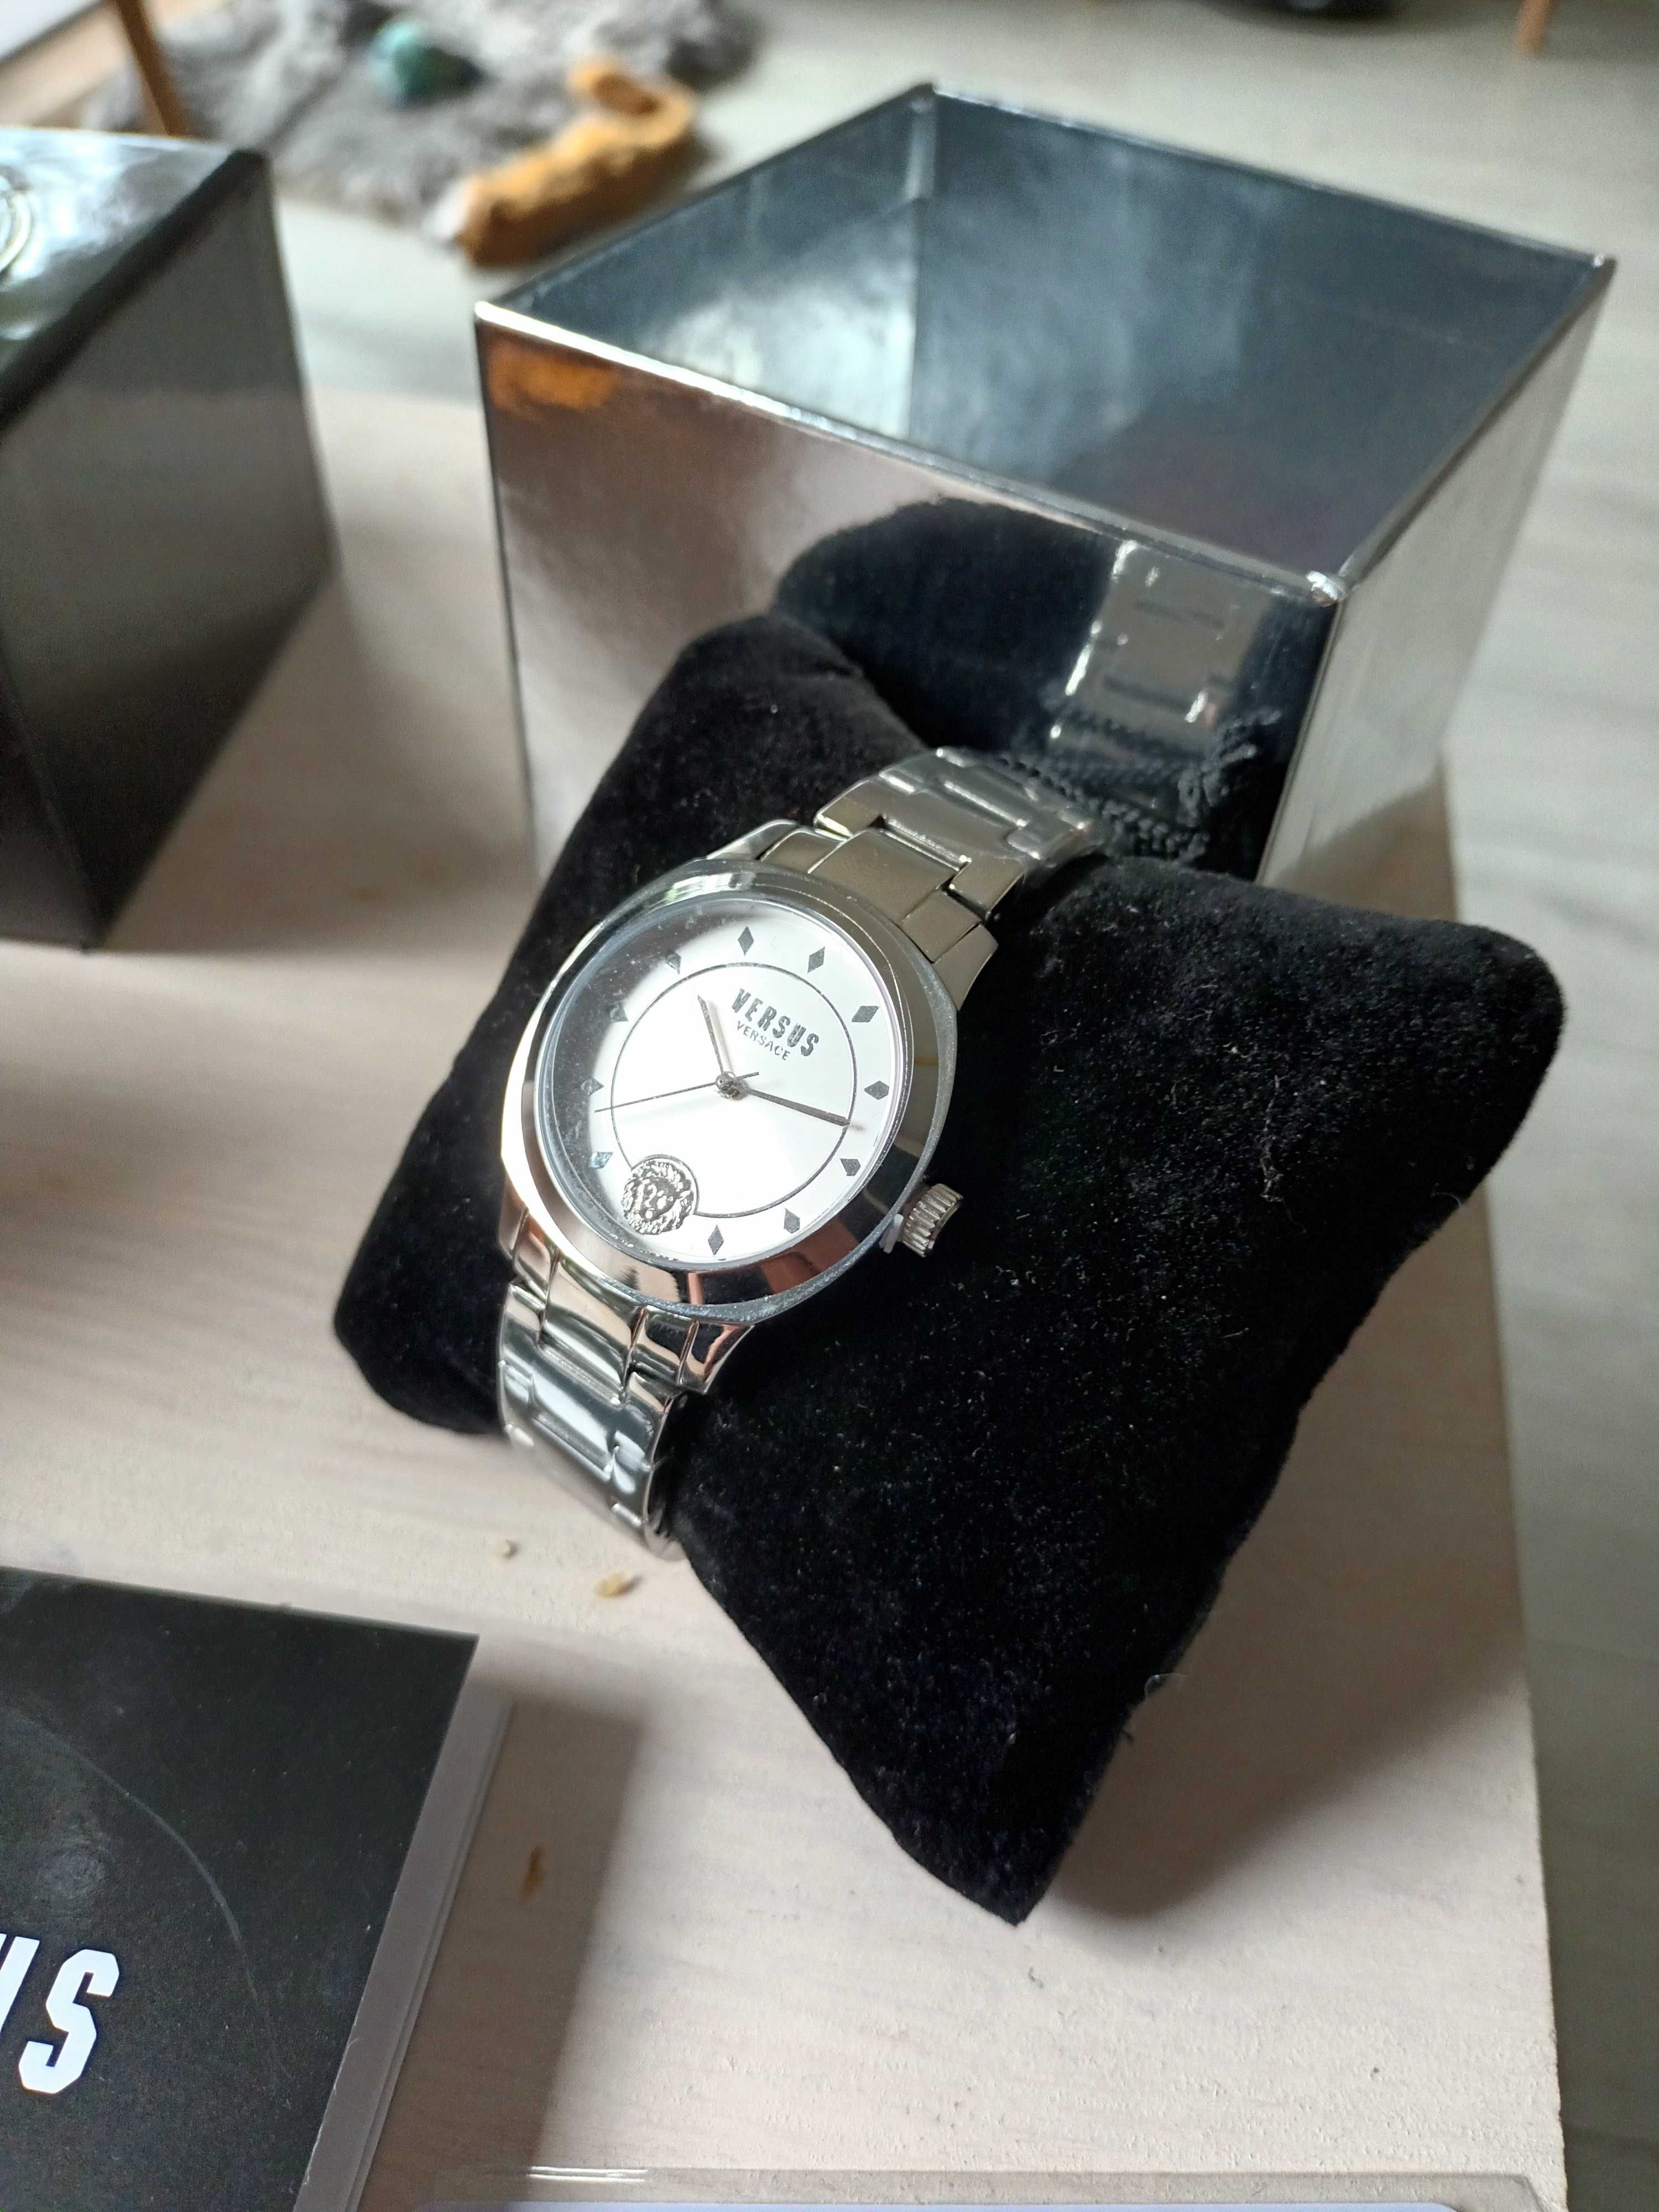 Nowy zegarek Versus Versace za 1/3 ceny. Karta gwarancyjna ...